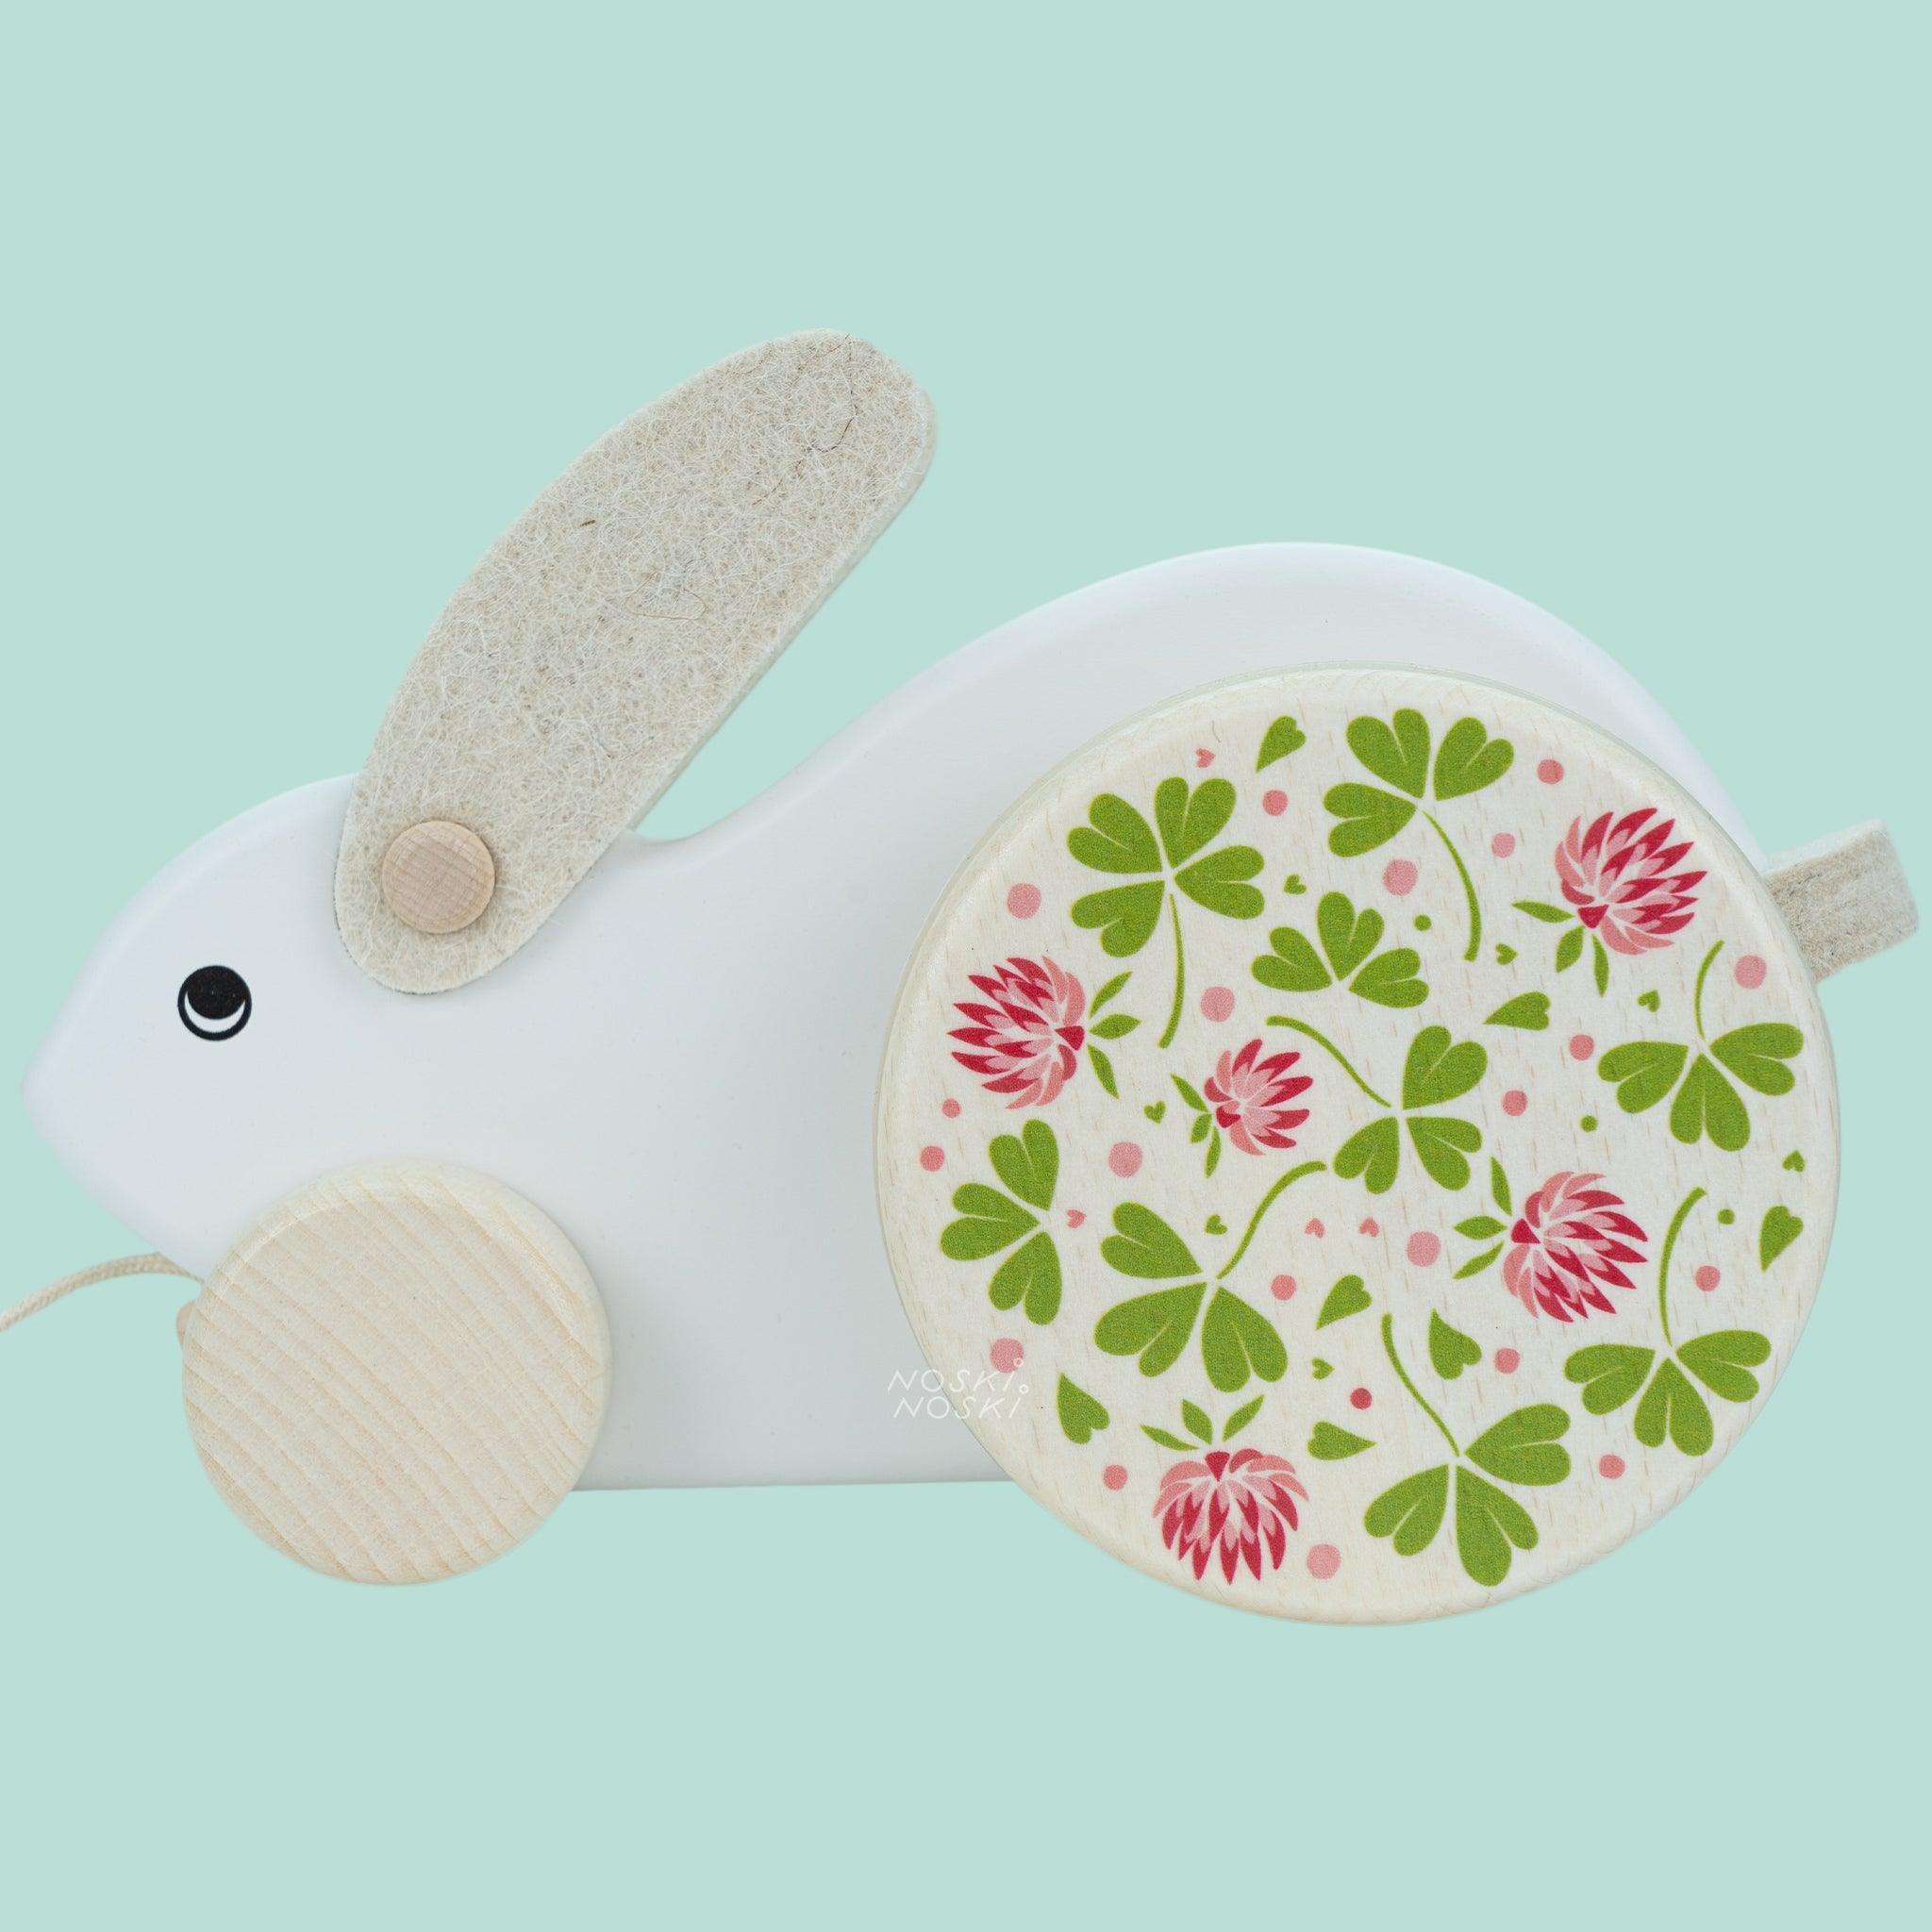 Bajo: White Rabbit pull toy - Kidealo